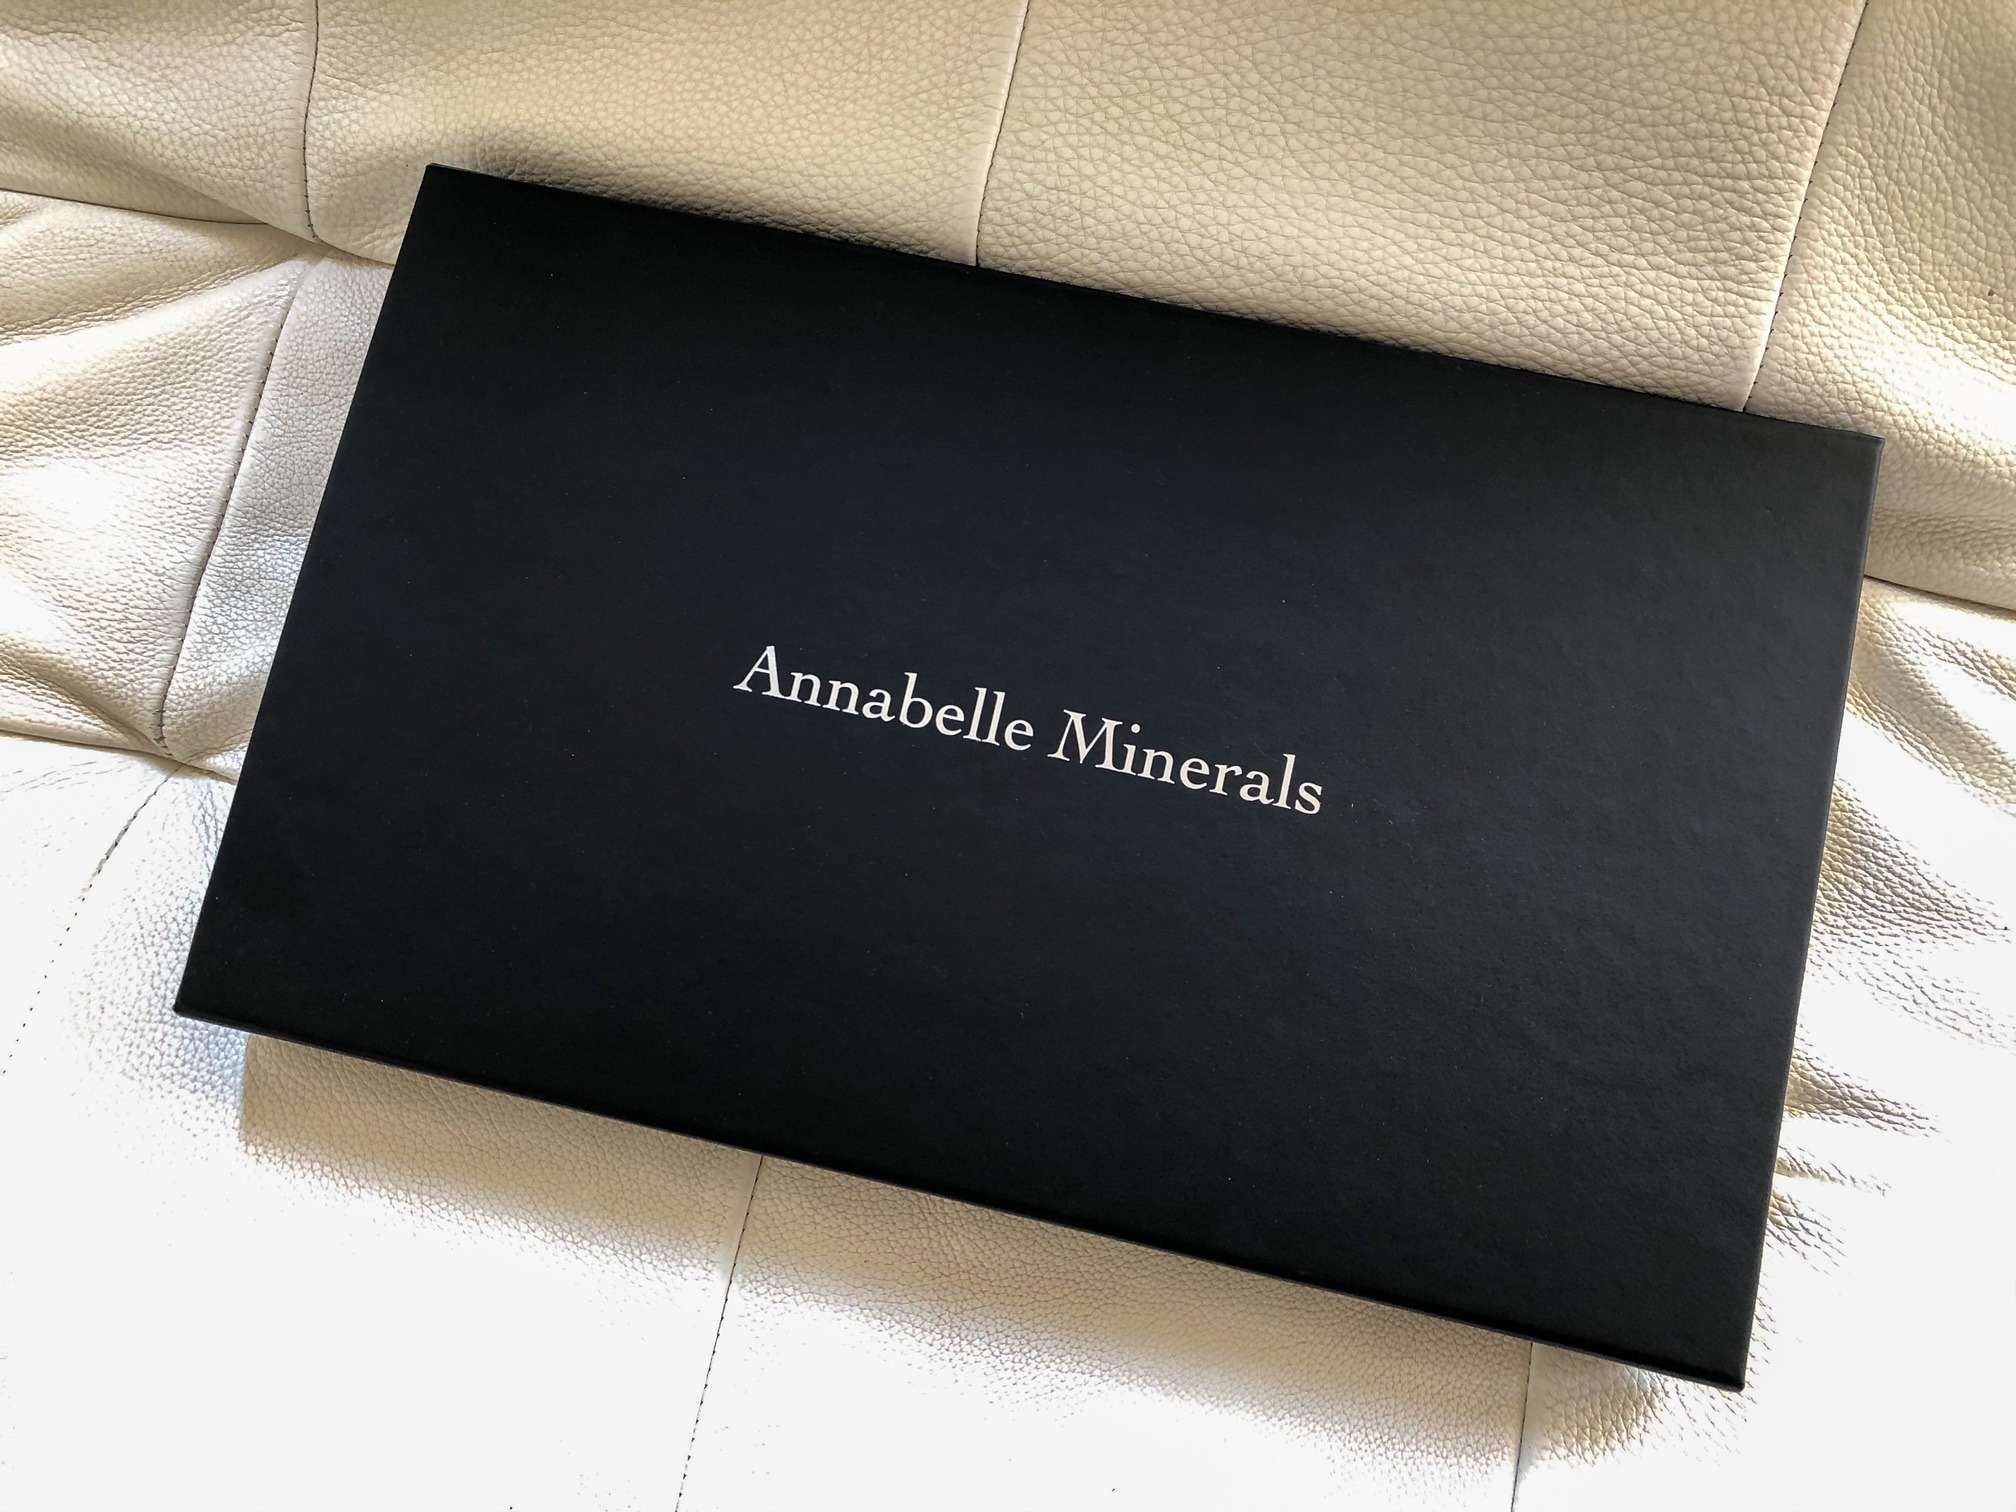 Vyzkoušené přípravky Annabelle Minerals - velký set